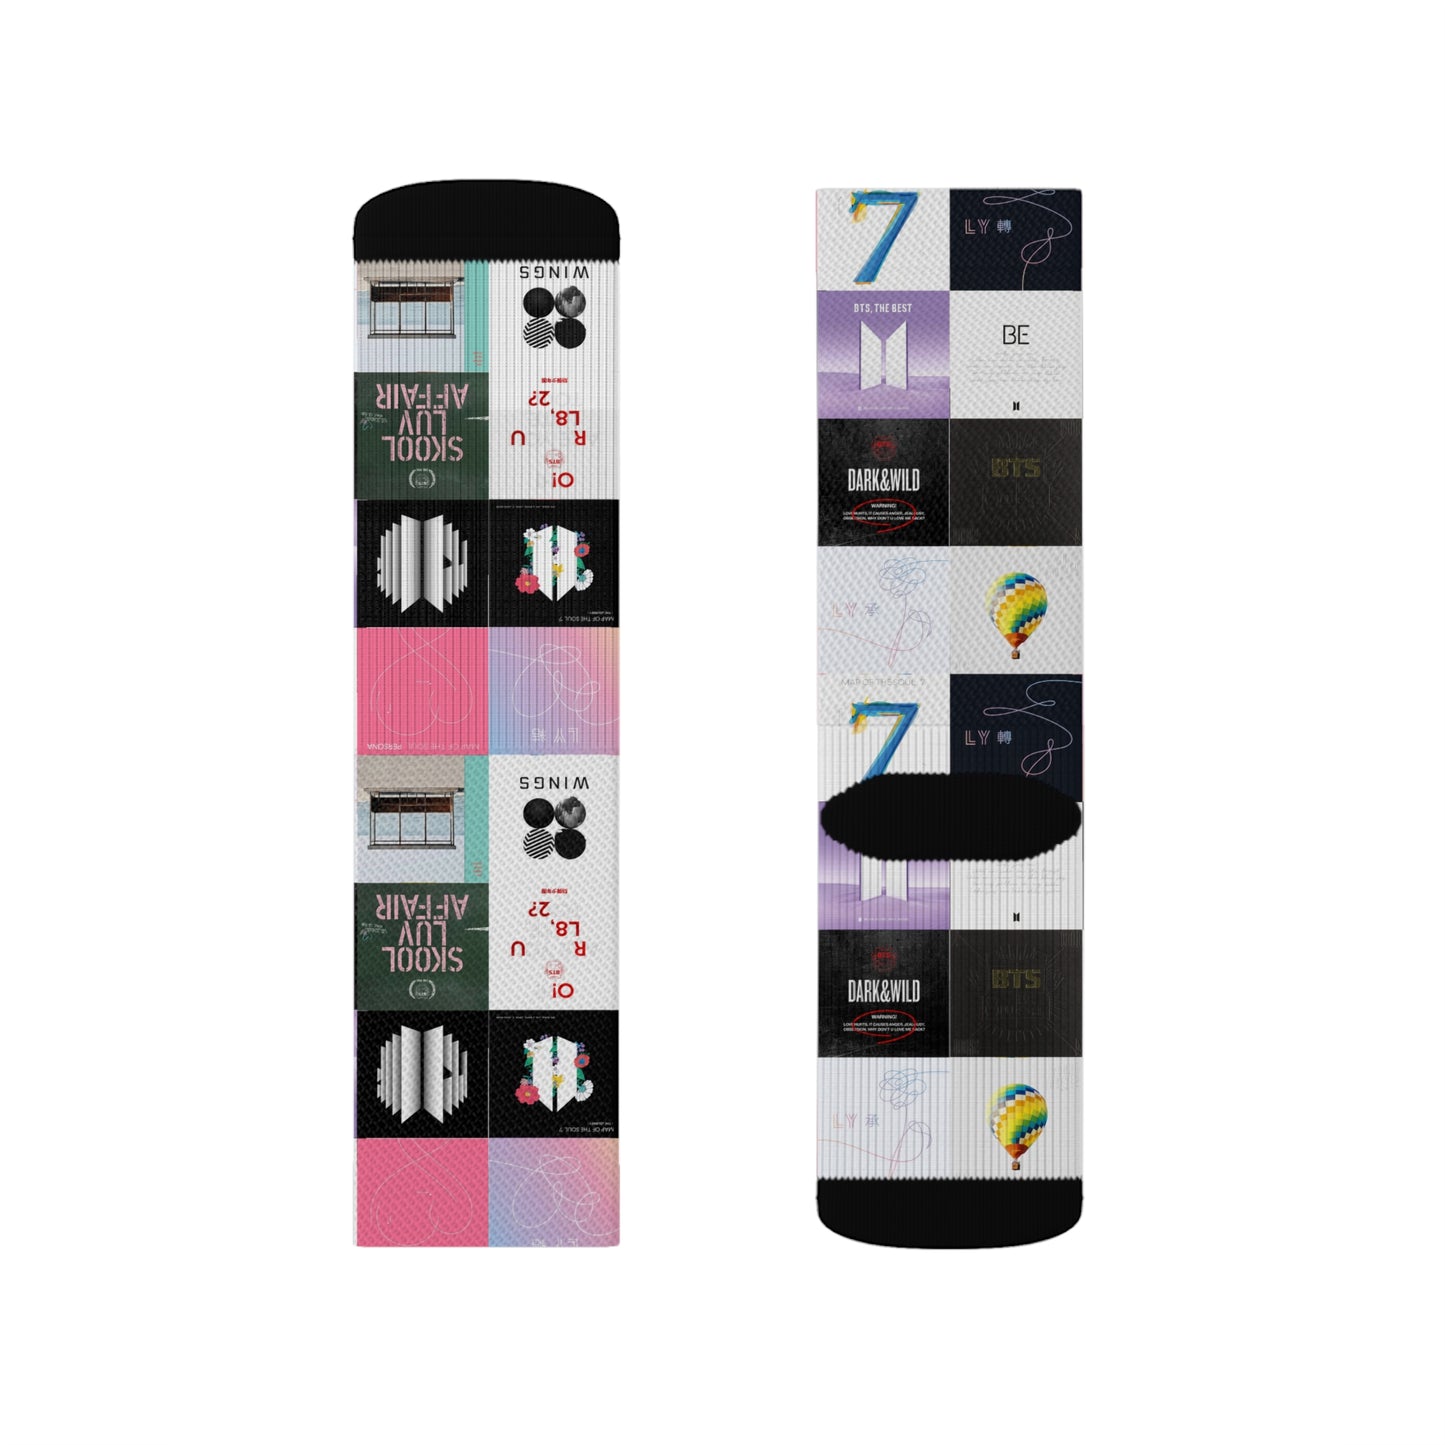 BTS Album Cover Art Collage Tube Socks